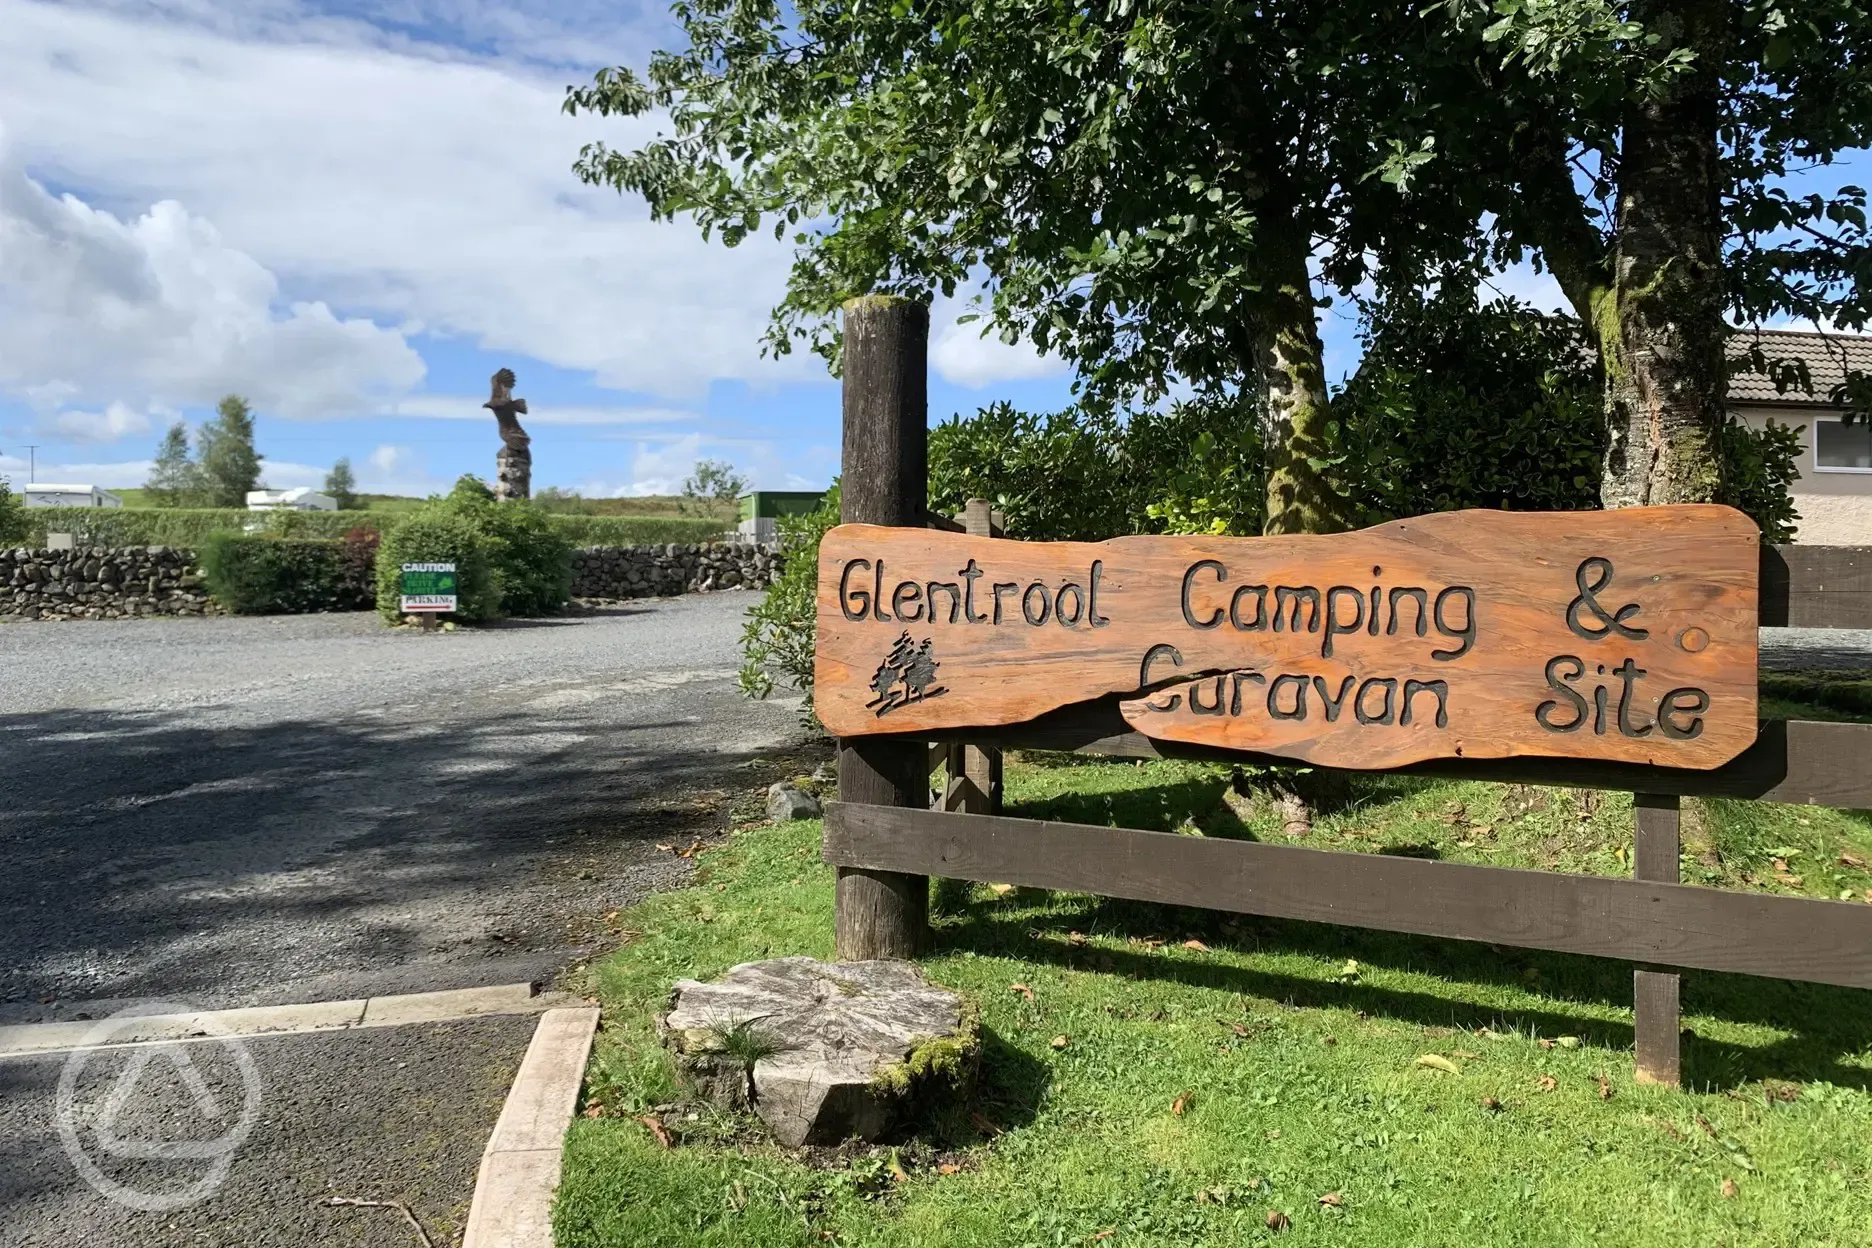 Campsite Entrance